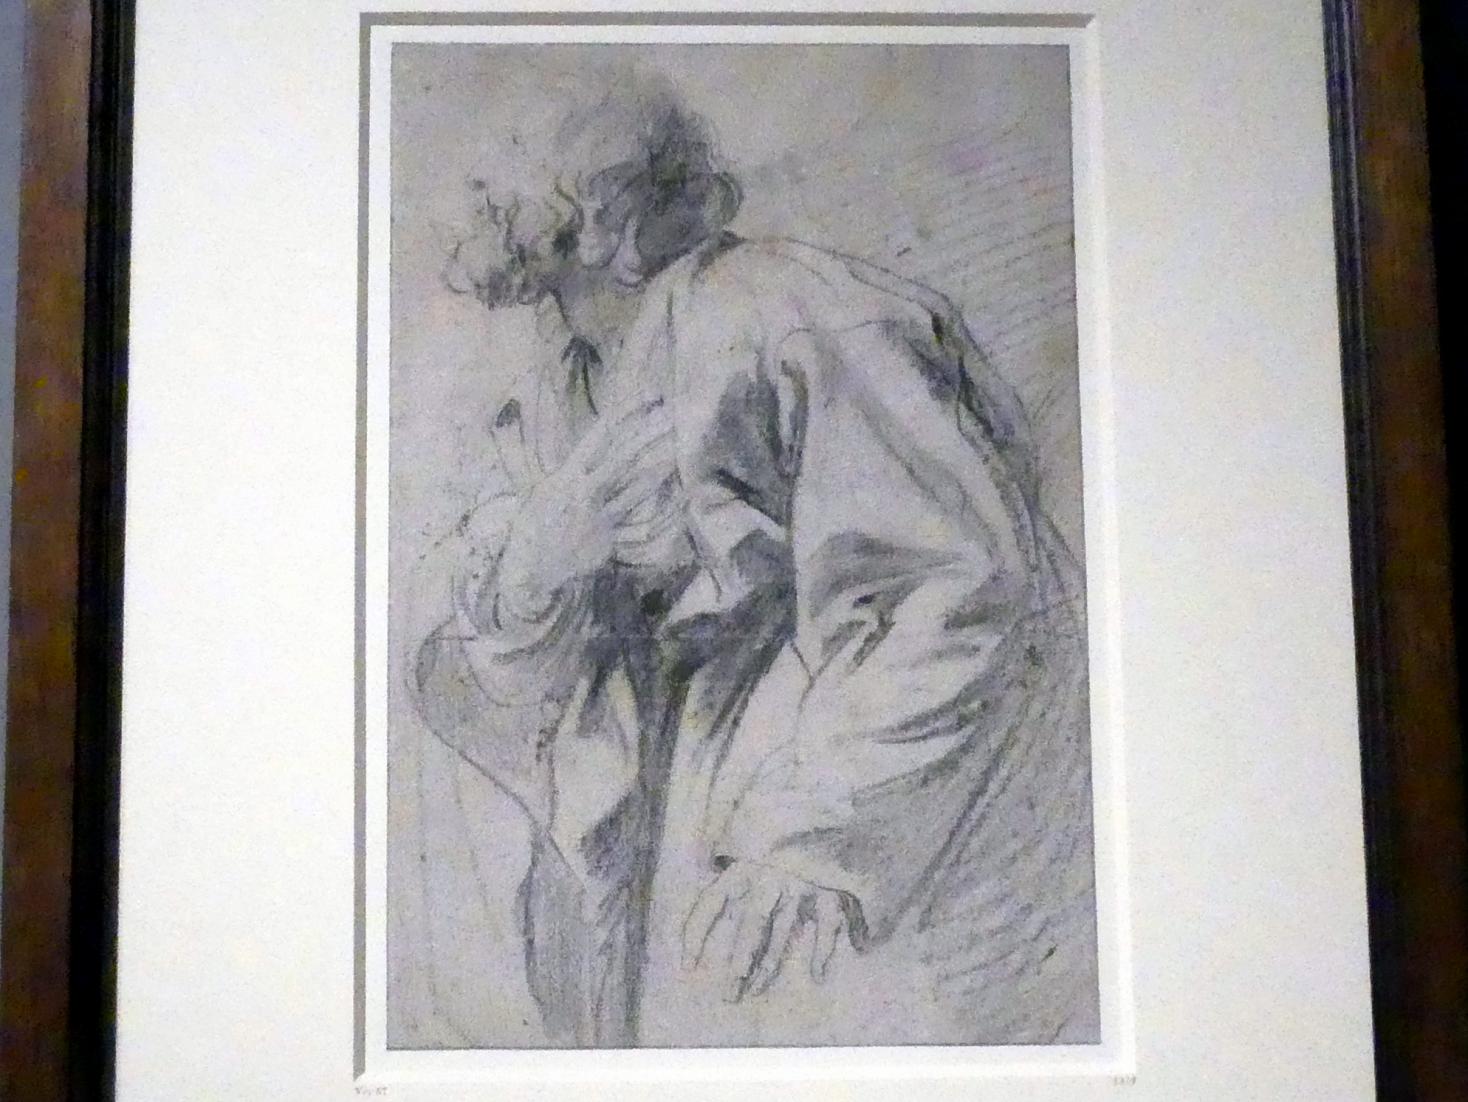 Anthonis (Anton) van Dyck (1614–1641), Studie eines Mannes, mit der Hand auf seine Brust weisend, München, Alte Pinakothek, Ausstellung "Van Dyck" vom 25.10.2019-02.02.2020, Die Anfänge - 3, um 1618–1620